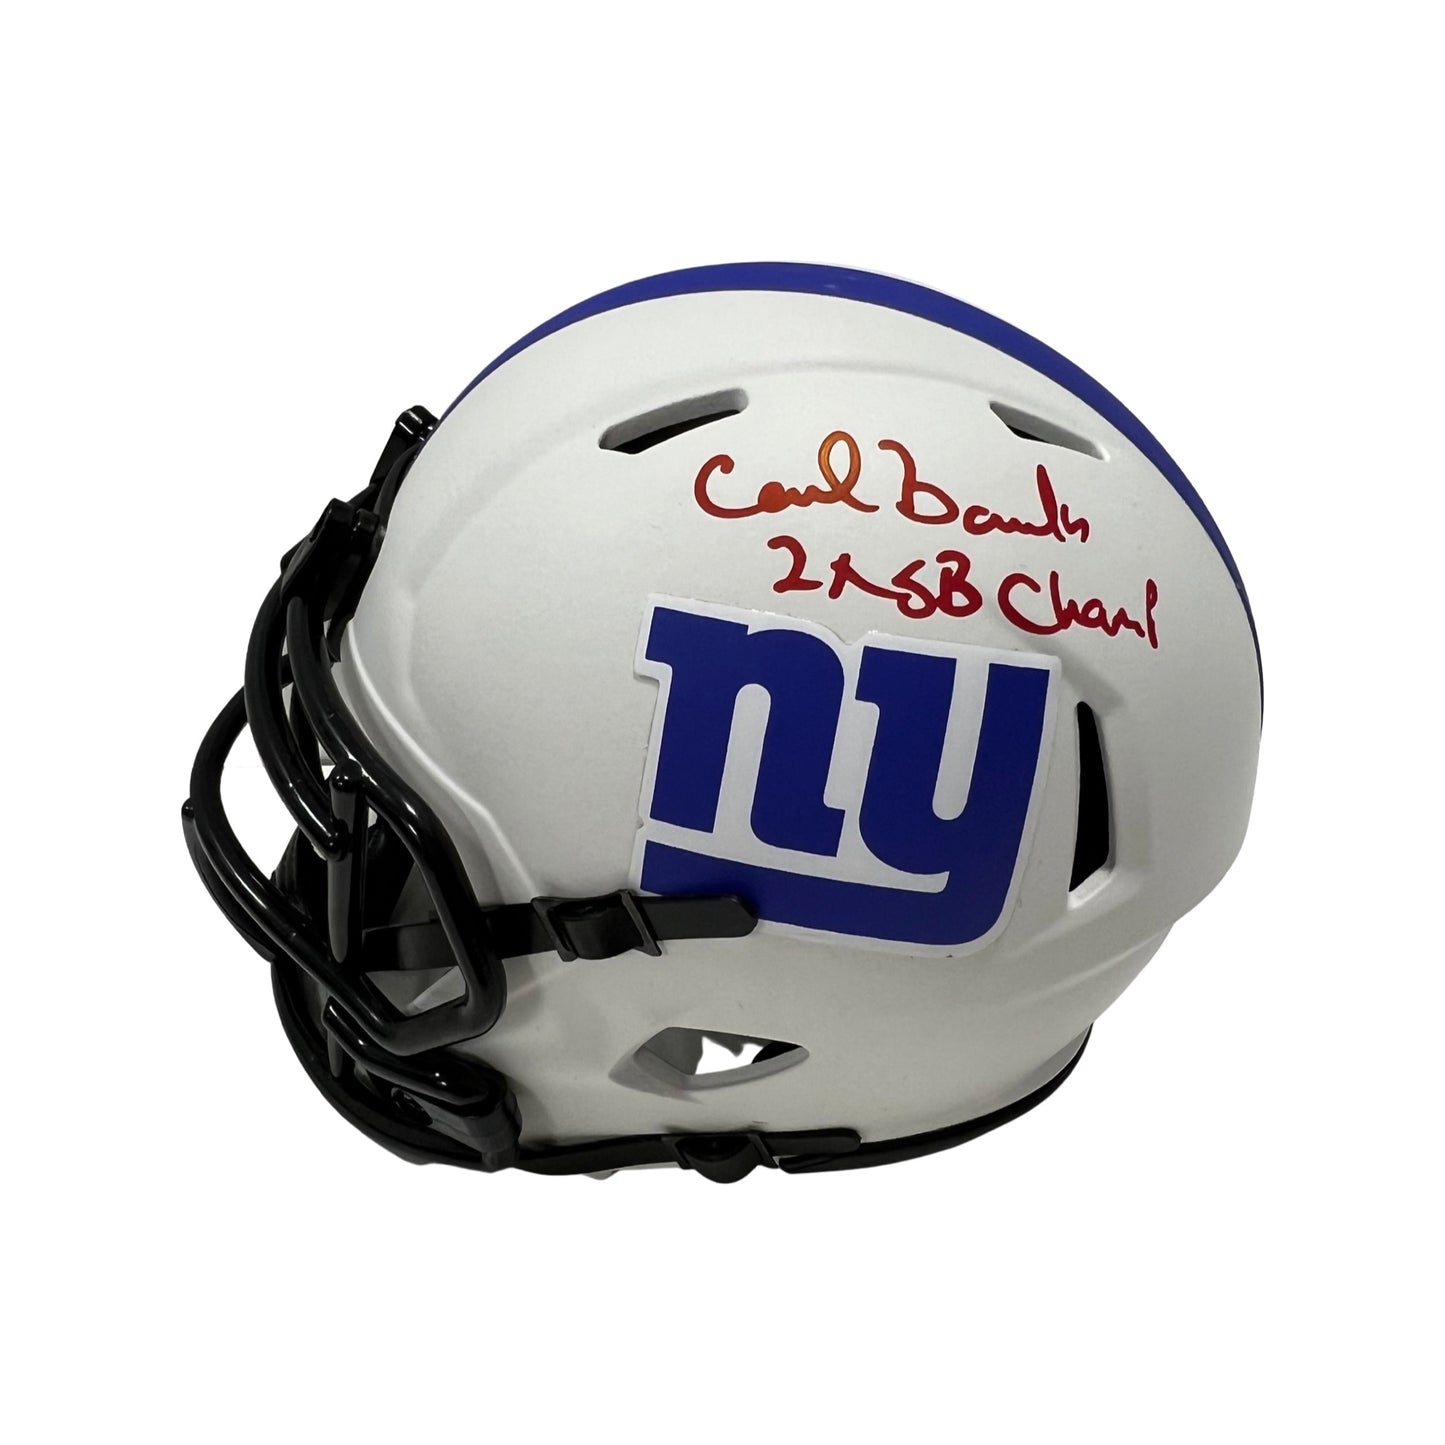 Carl Banks Autographed New York Giants Lunar Eclipse Mini Helmet “2x SB Champs” Inscription Steiner CX